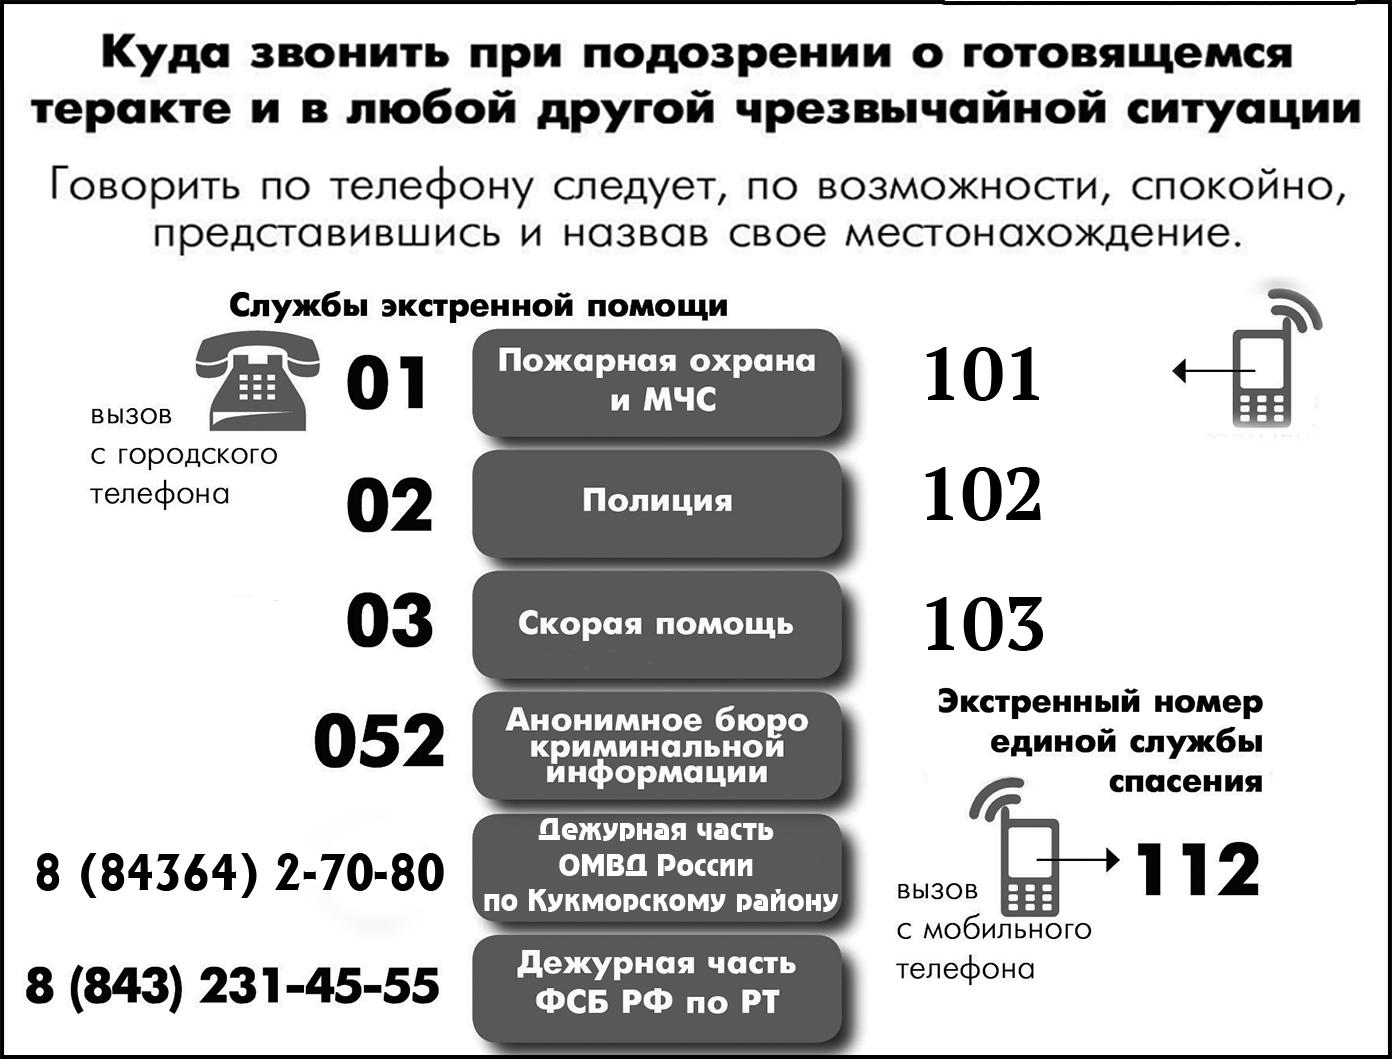 Жителям Кукморского района напомнили номера телефонов служб экстренной помощи 